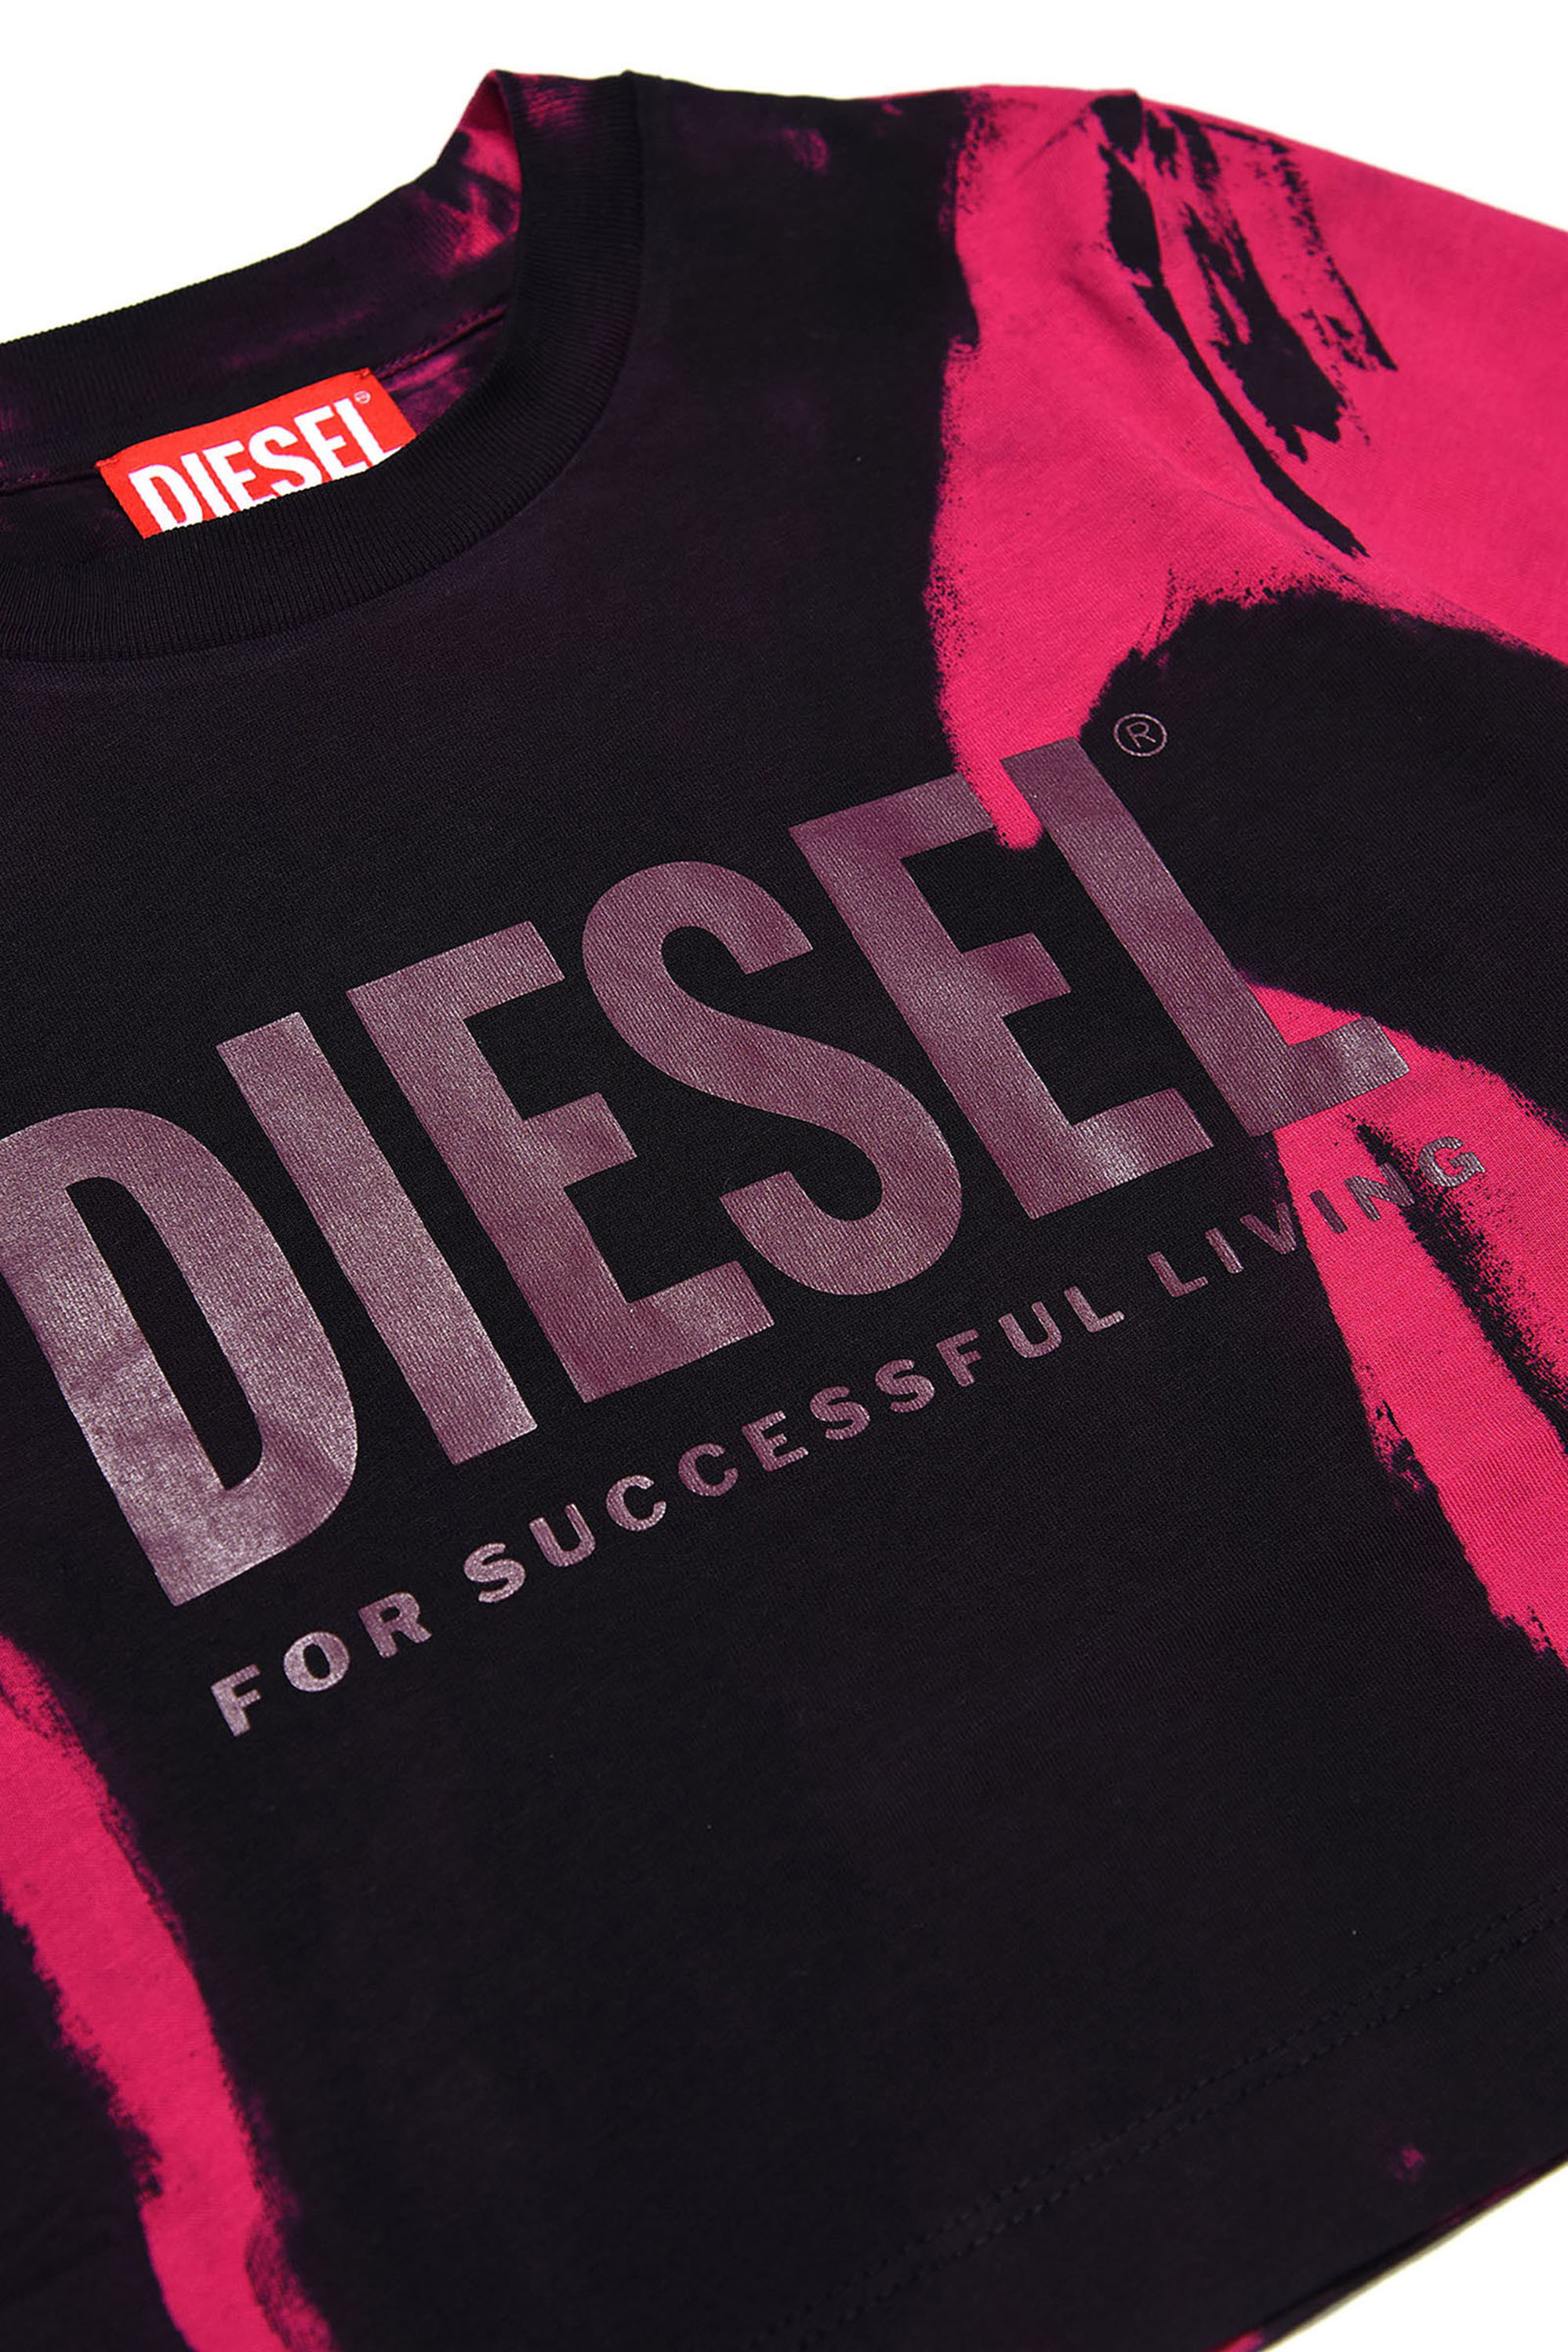 Diesel - TRECROWT&D, Schwarz/Rosa - Image 3